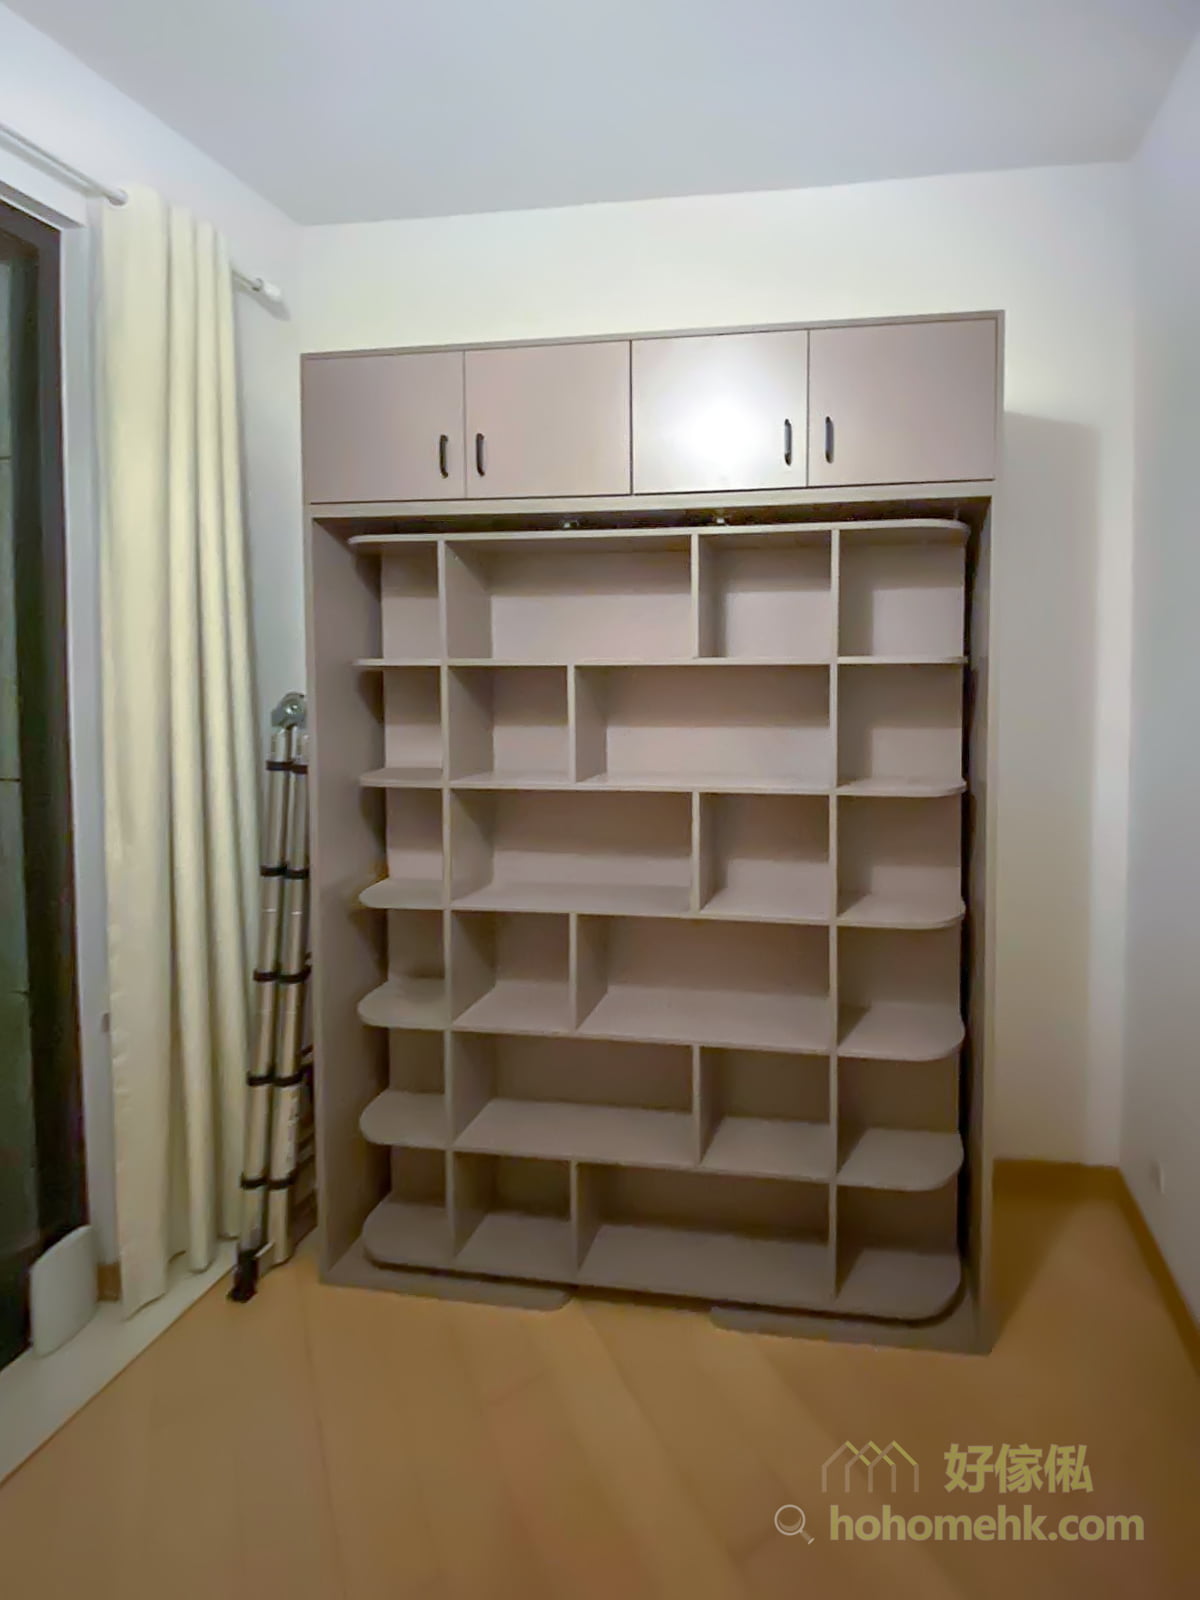 機能書架床, 一整面高身書櫃可以擺放很多書籍和裝飾，如果配合收納籃使用可以收納更多日用品